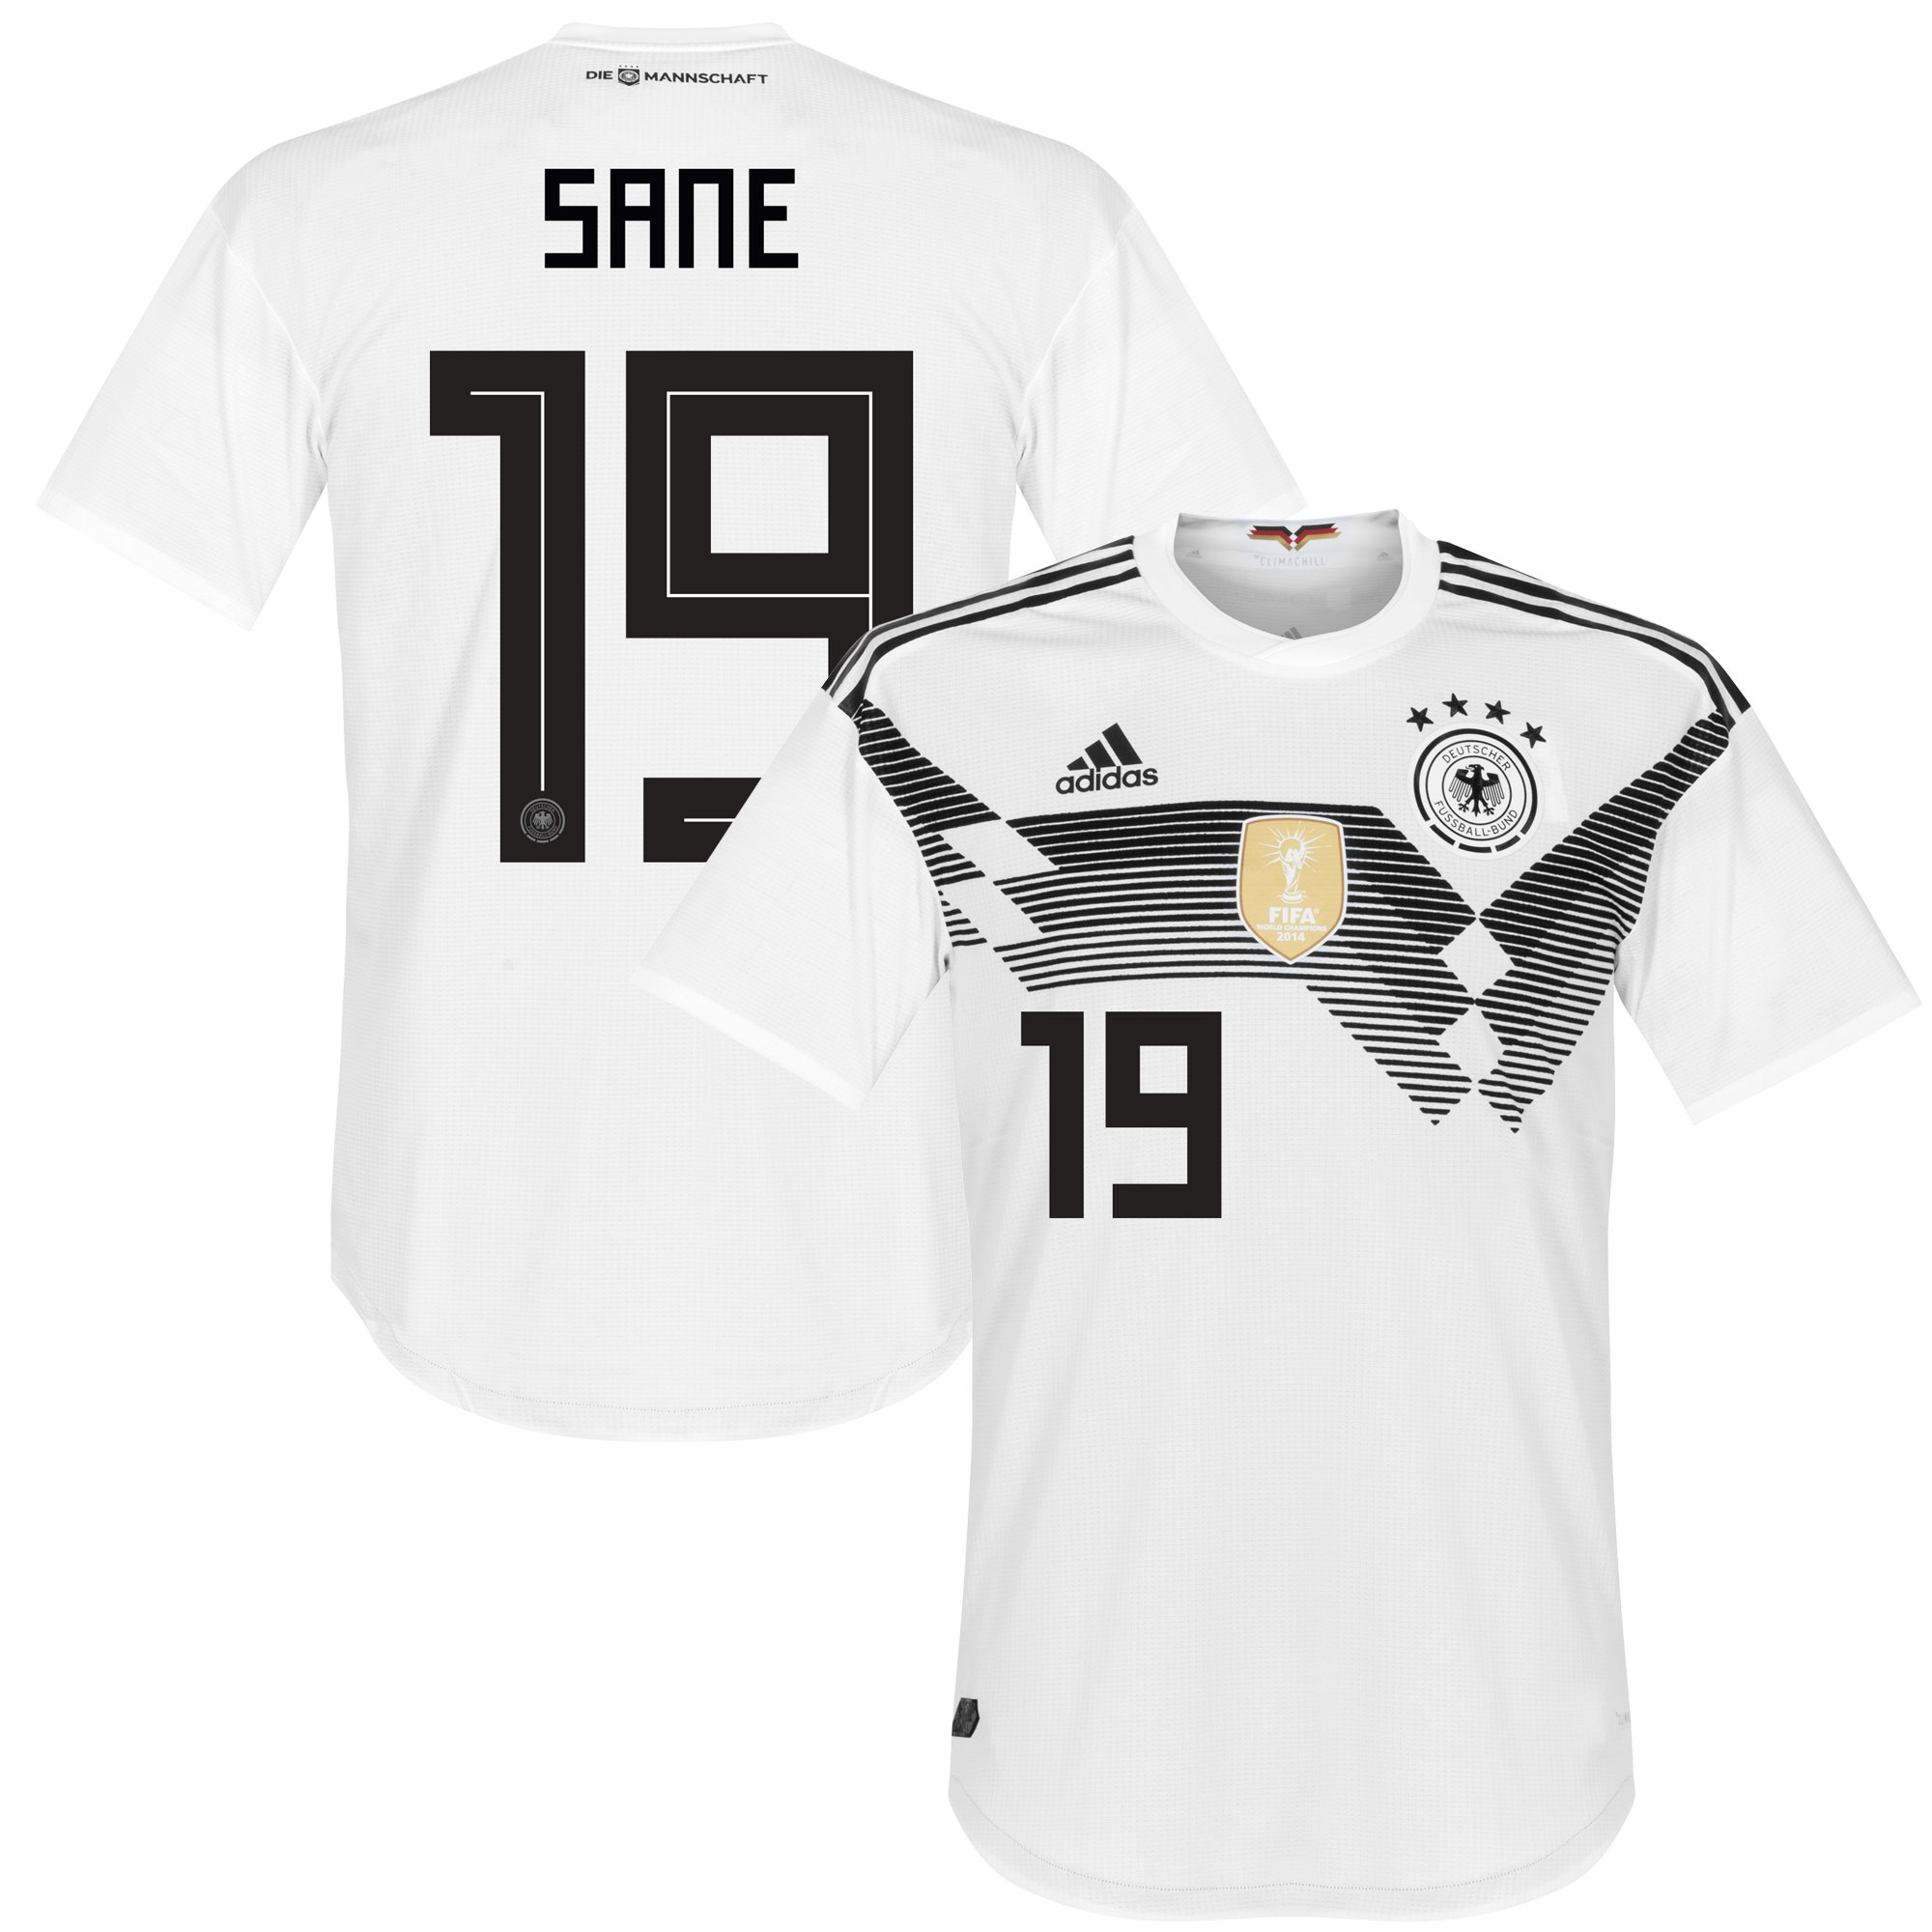 Duitsland Shirt Thuis 2018-2019 + Sané 19 46